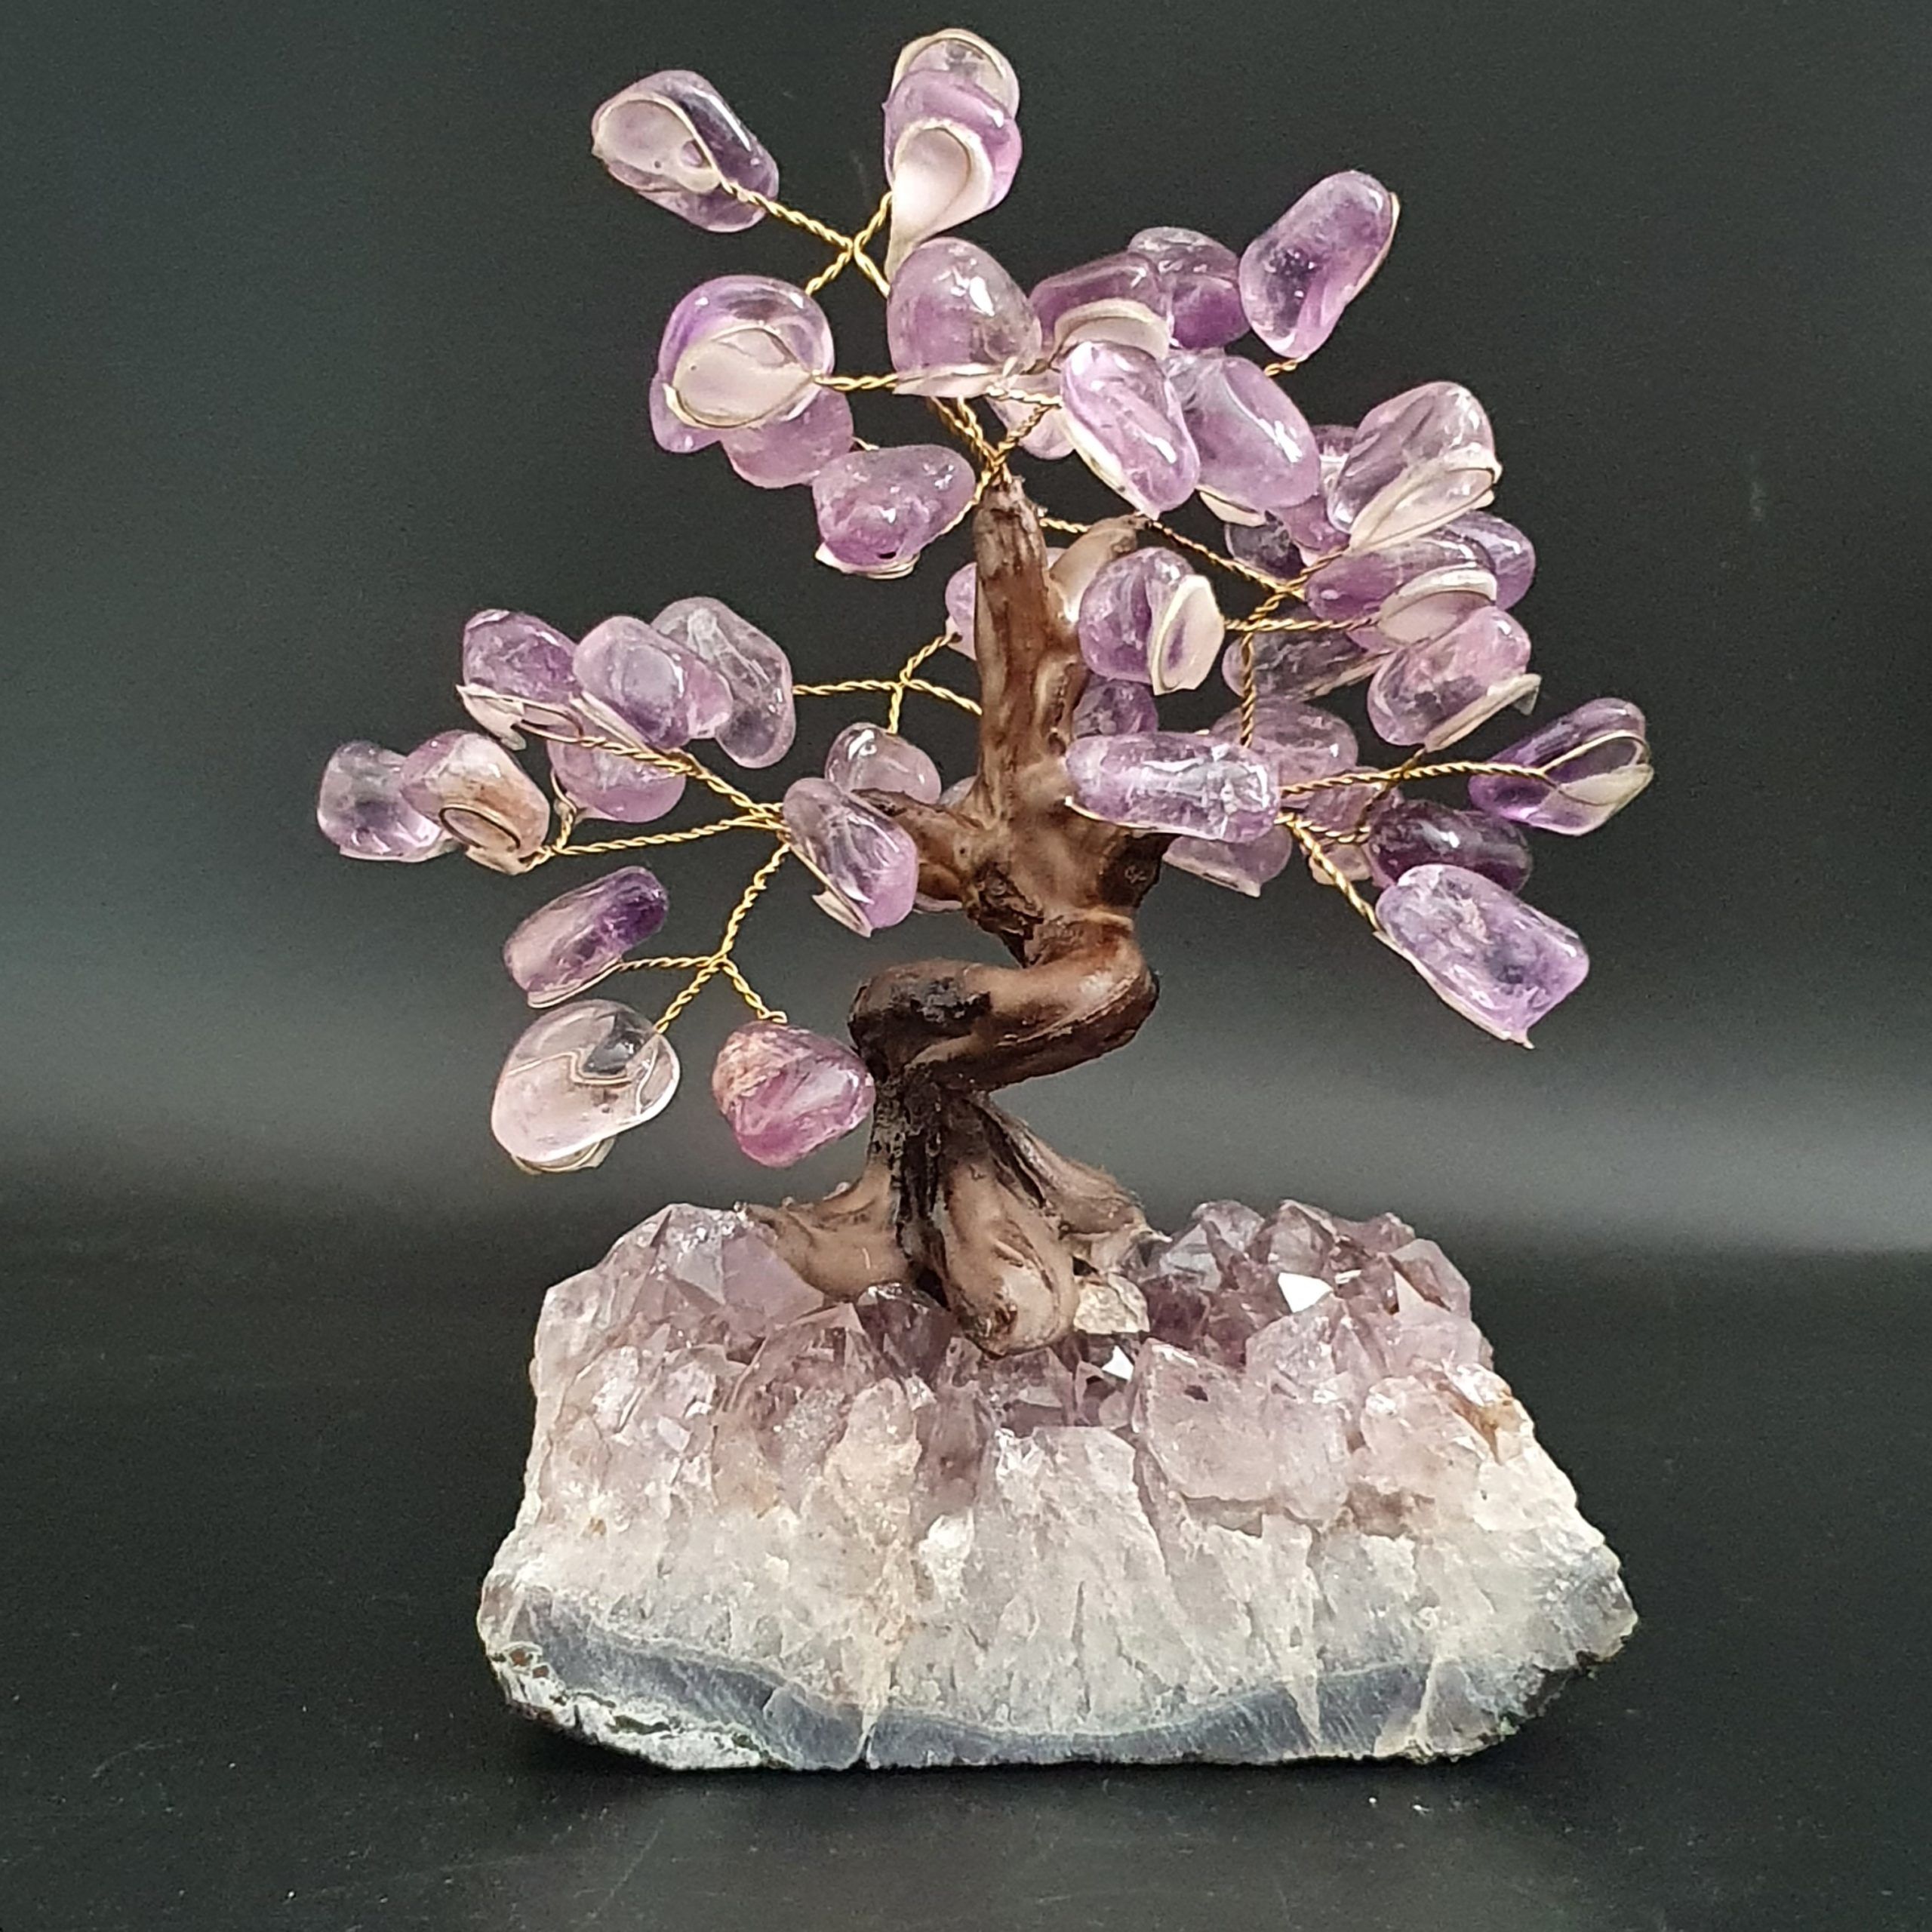 AM201 - Amethyst Crystal Bonsai Tree - MystikalZen